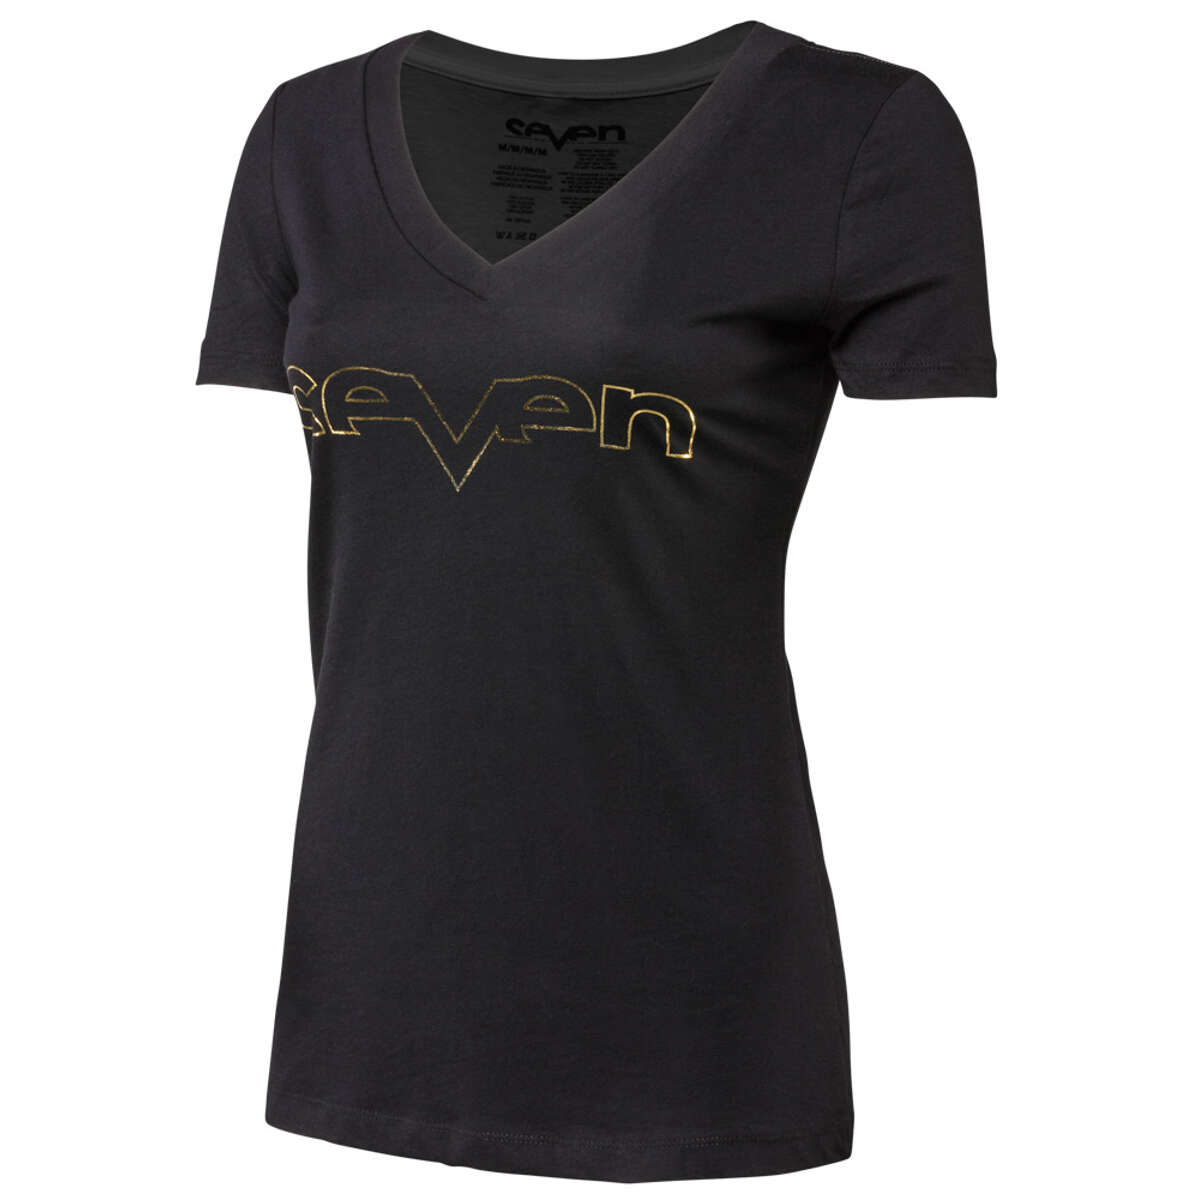 Seven MX Girls T-Shirt Brand Foil Black